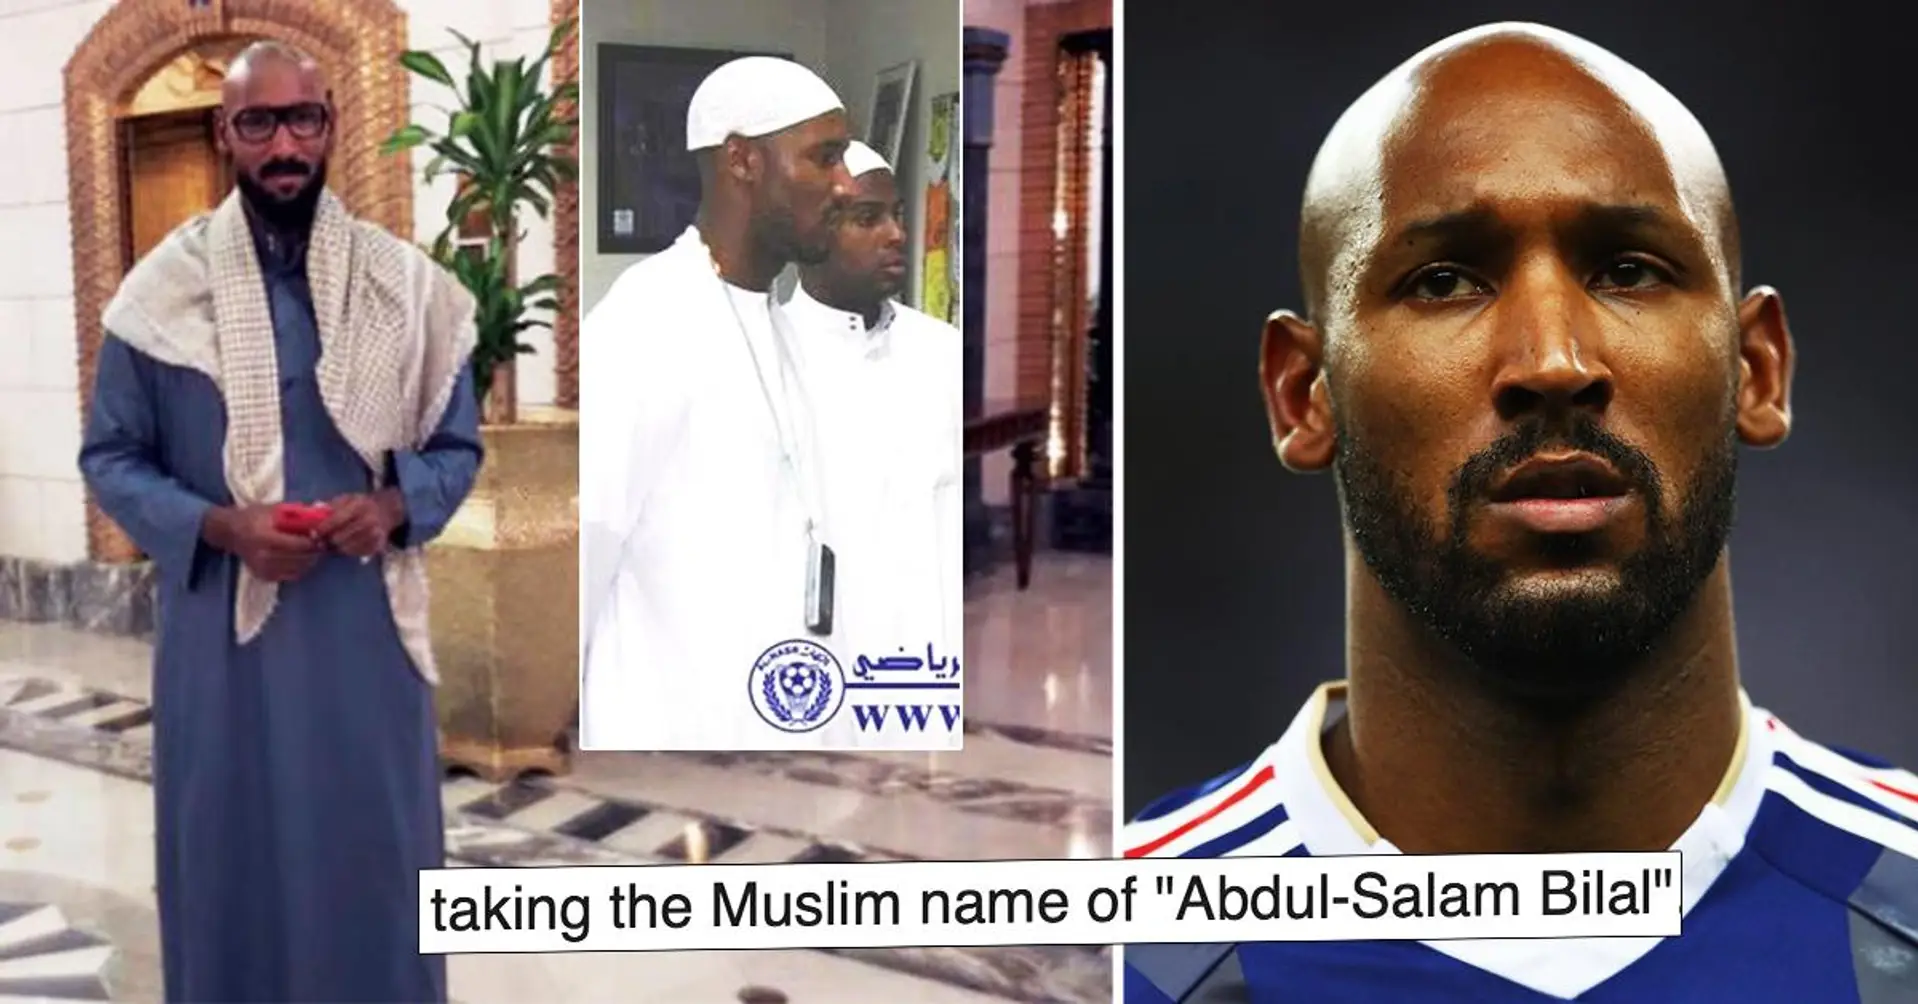 "Er nahm den Namen Abdul-Salam Bilal": Nicolas Anelka erklärt, warum er vom Christentum zum Islam konvertierte